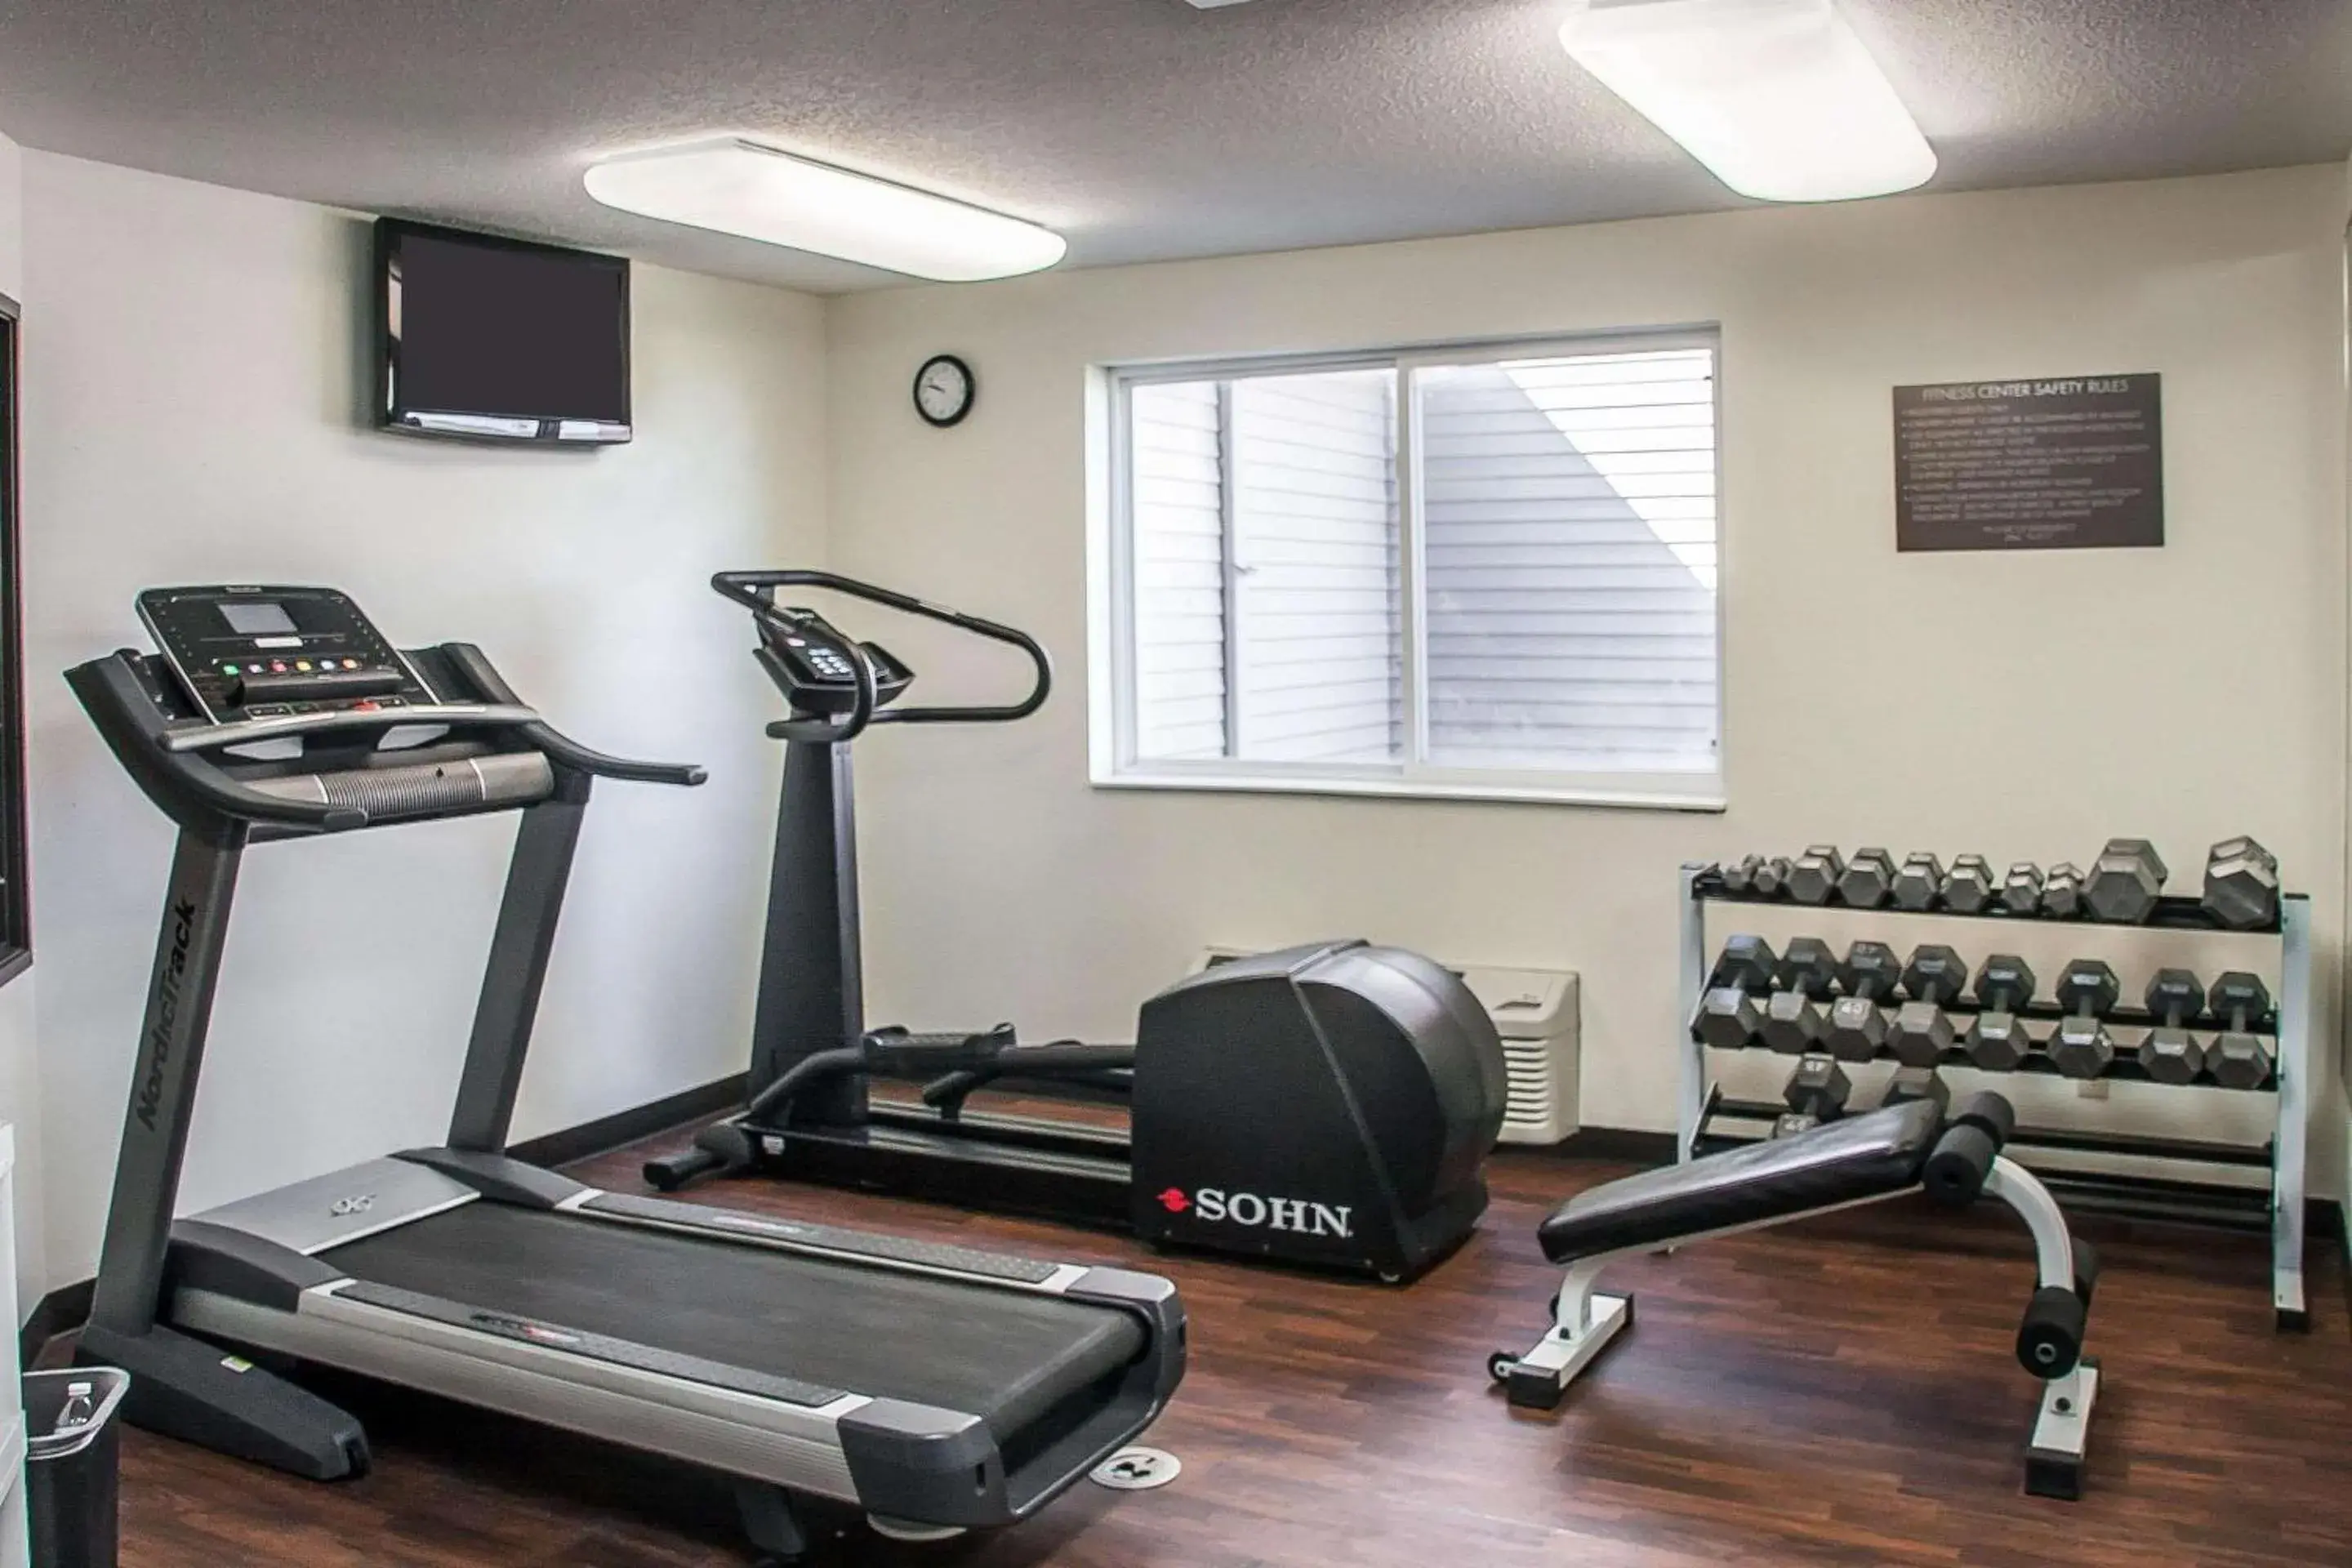 Fitness centre/facilities, Fitness Center/Facilities in Comfort Inn Fergus Falls